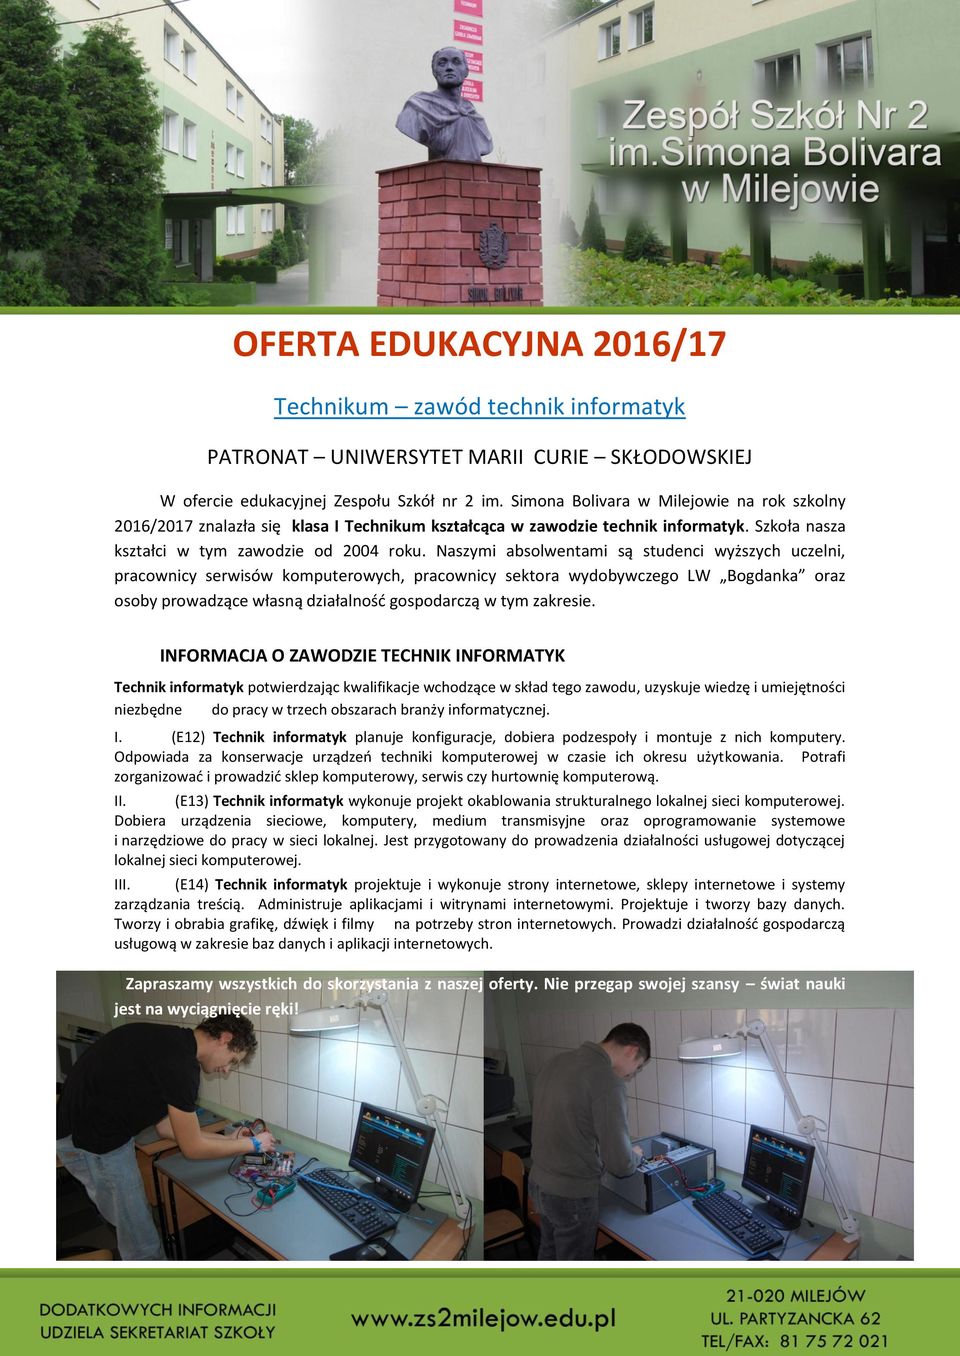 Naszymi absolwentami są studenci wyższych uczelni, pracownicy serwisów komputerowych, pracownicy sektora wydobywczego LW Bogdanka oraz osoby prowadzące własną działalnośd gospodarczą w tym zakresie.